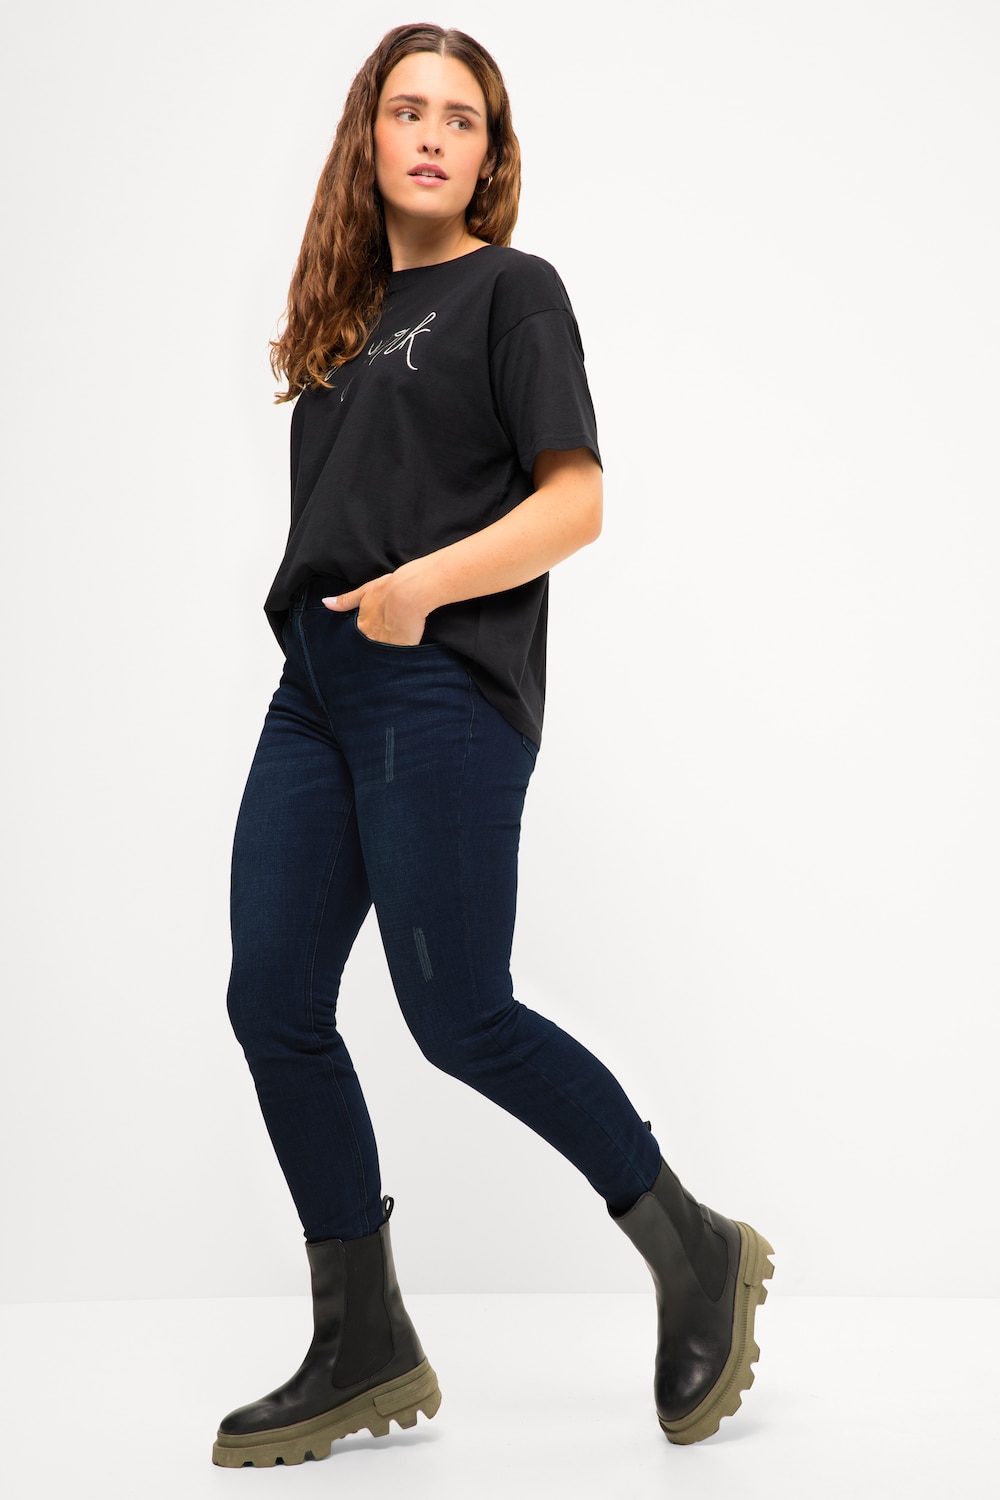 Grote Maten Skinny jeans, Dames, blauw, Maat: 42, Viscose/Katoen/Polyester, Studio Untold